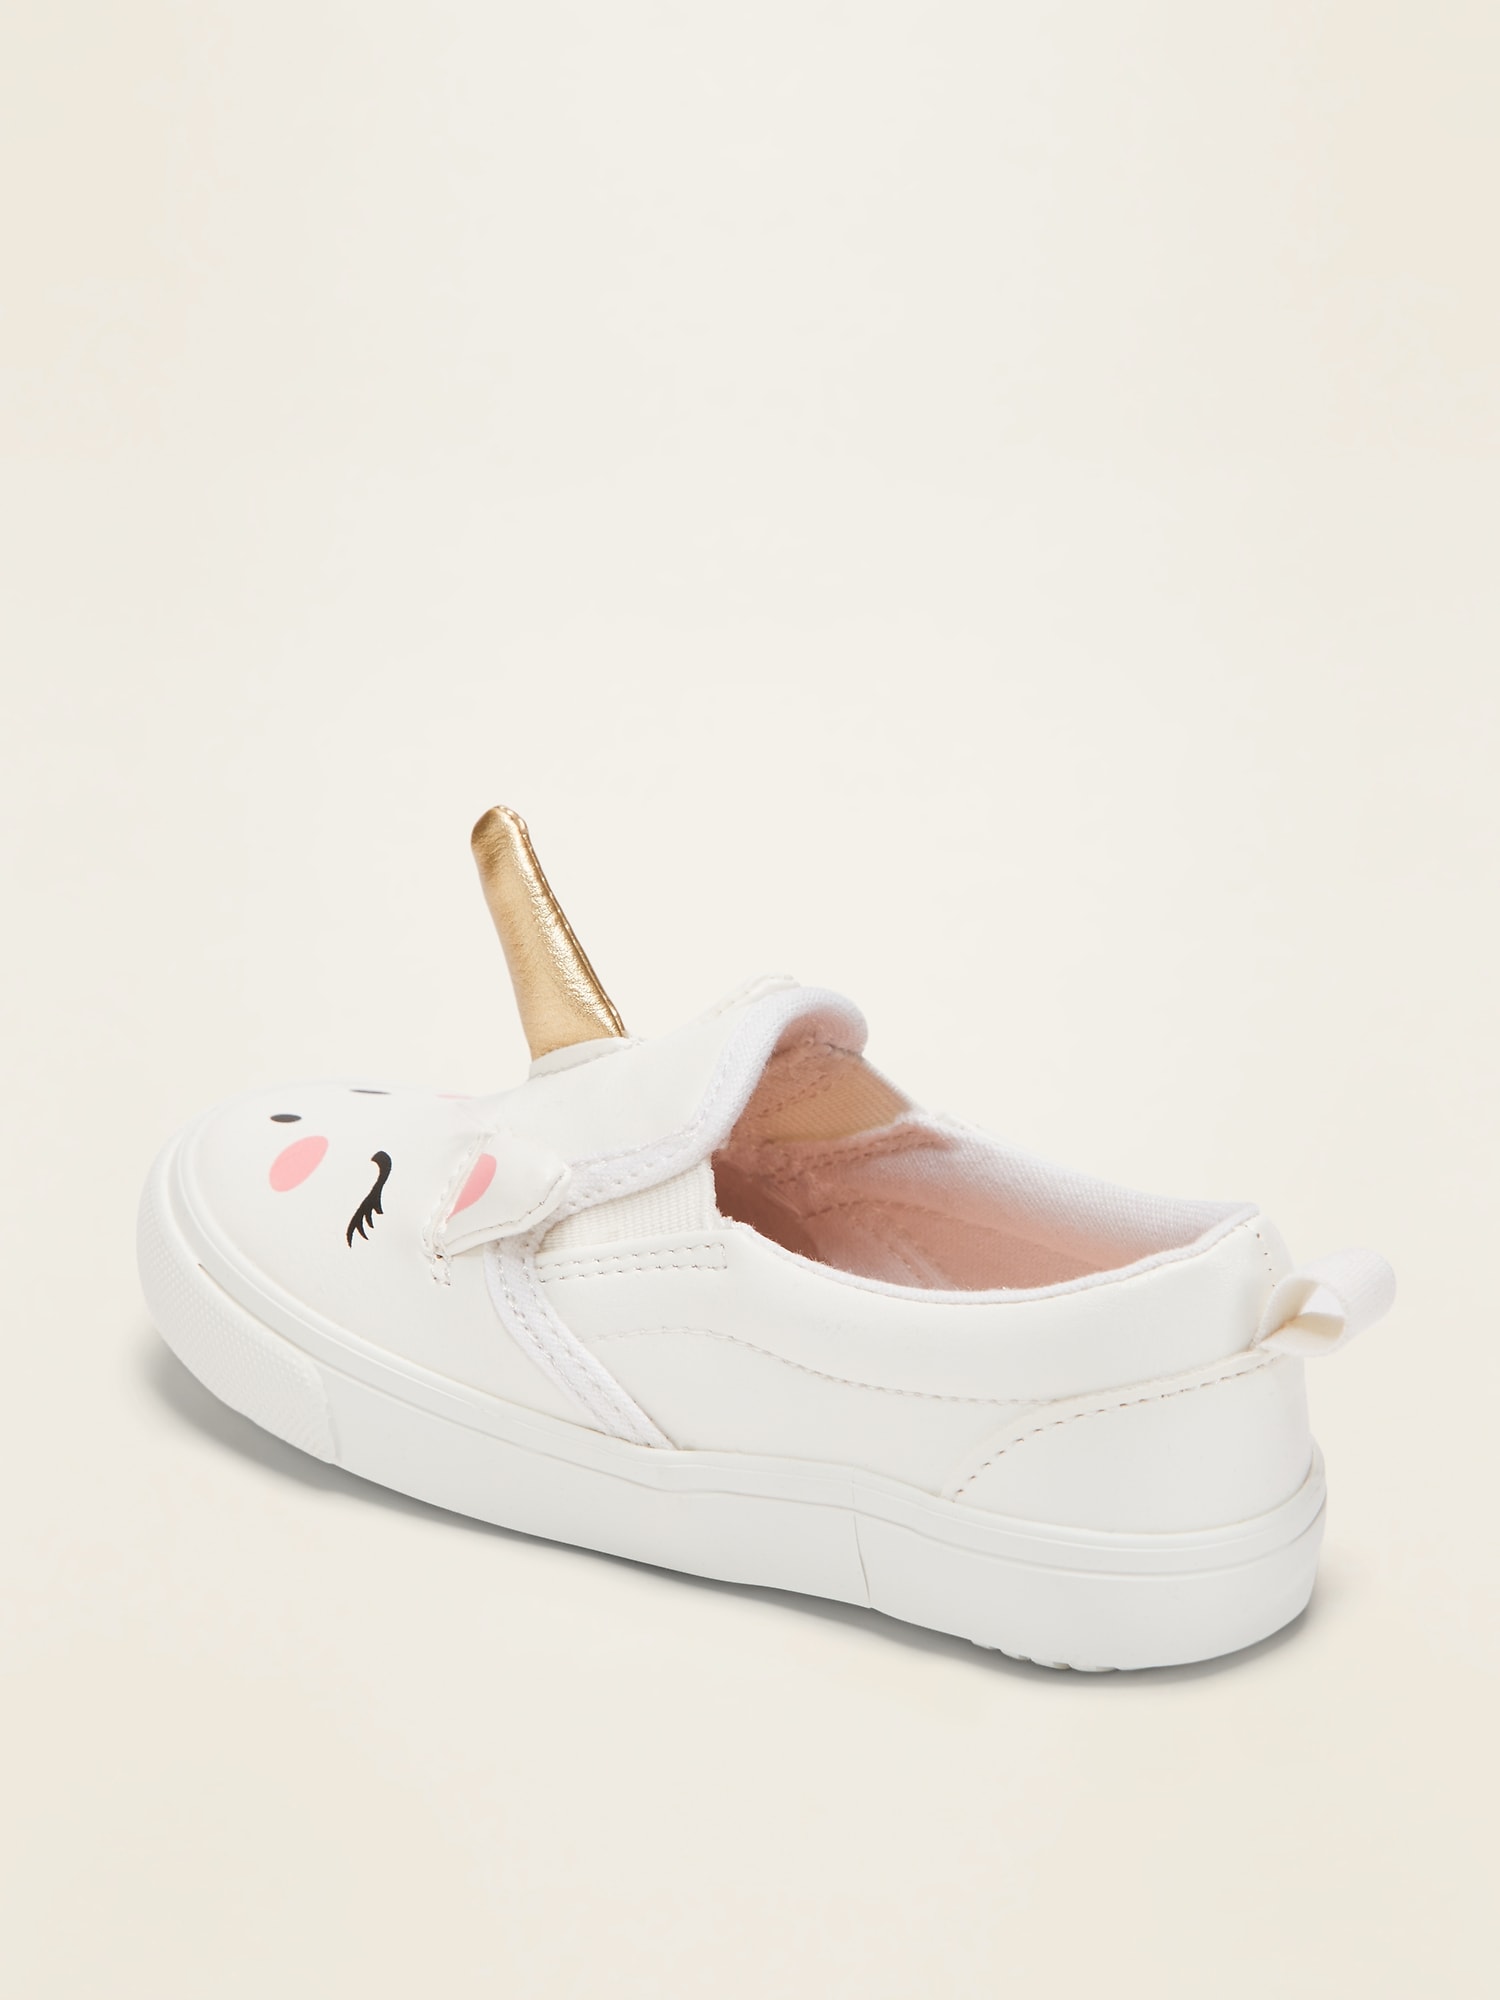 Unicorn Slip-Ons For Toddler Girls 